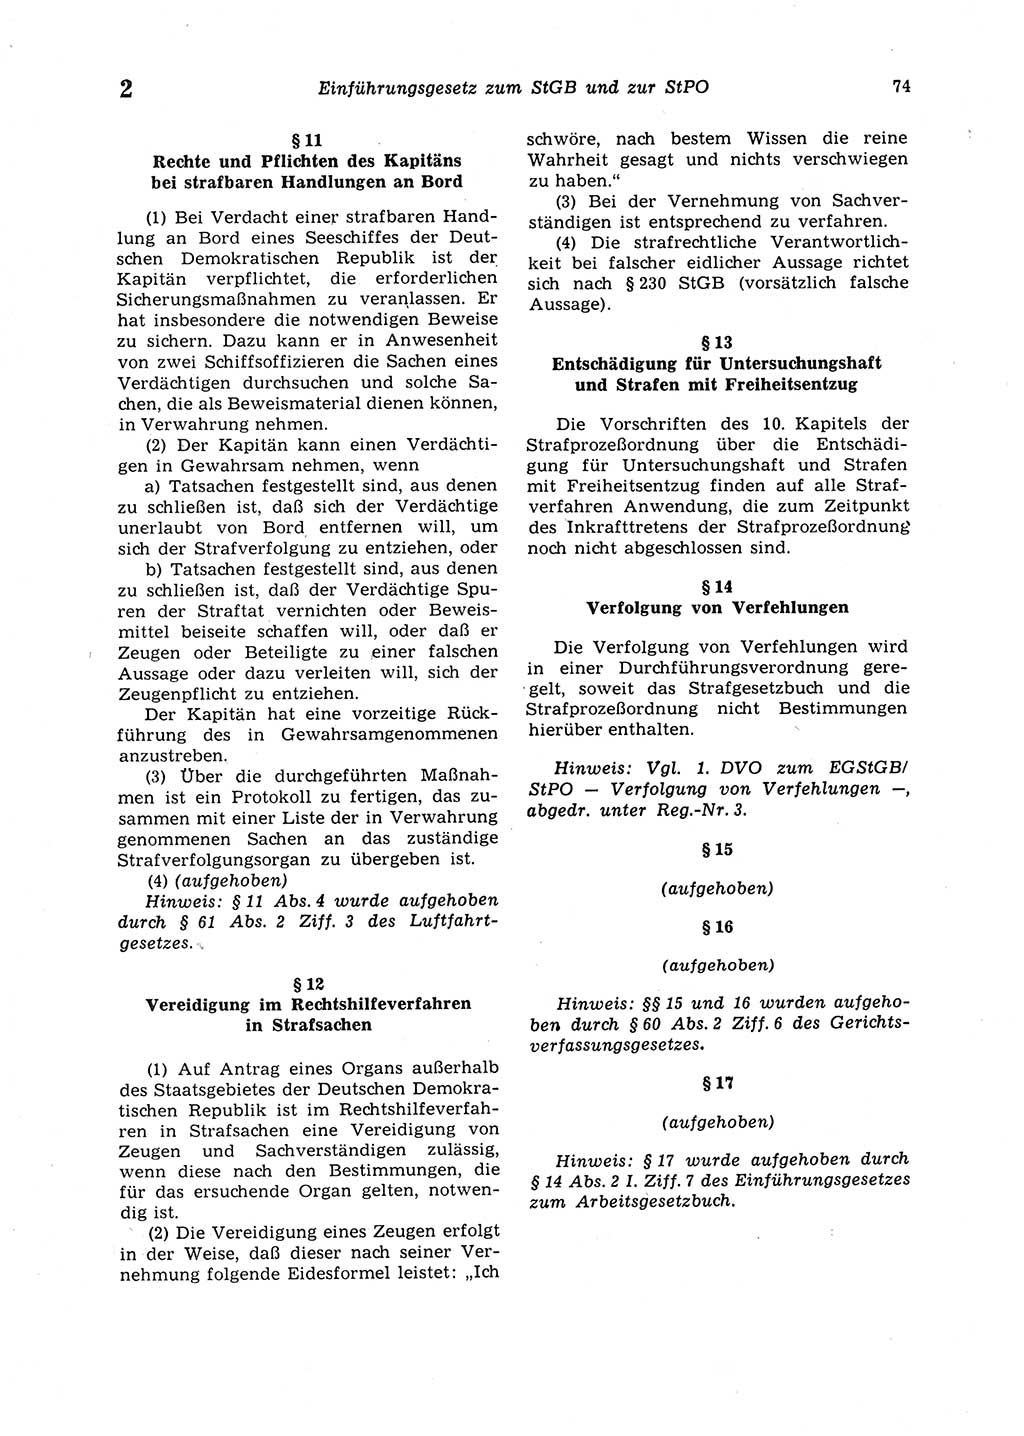 Strafgesetzbuch (StGB) der Deutschen Demokratischen Republik (DDR) 1987, Seite 74 (StGB DDR 1987, S. 74)